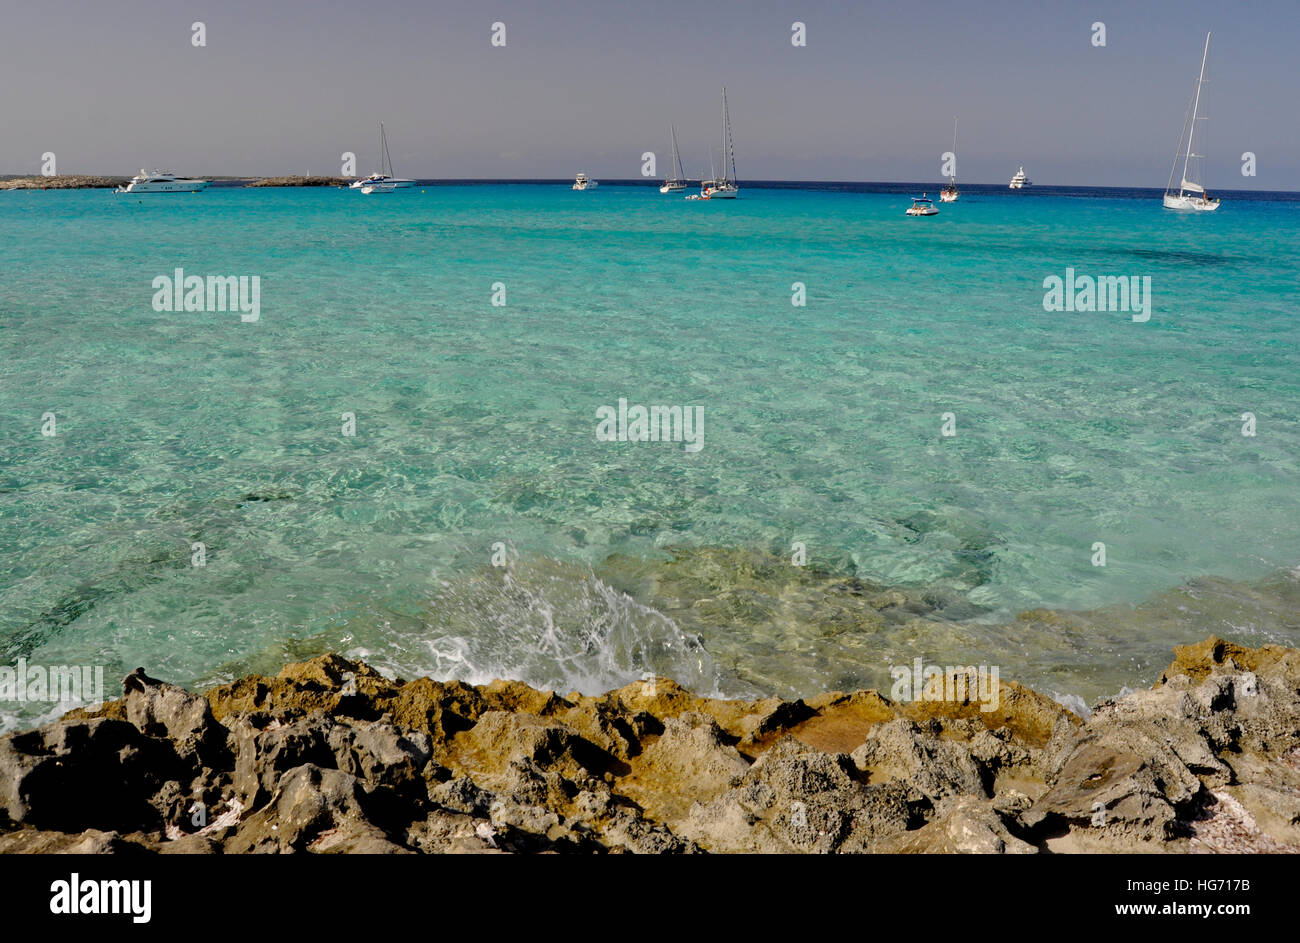 La mer de l'île de Formentera, Espagne. Banque D'Images